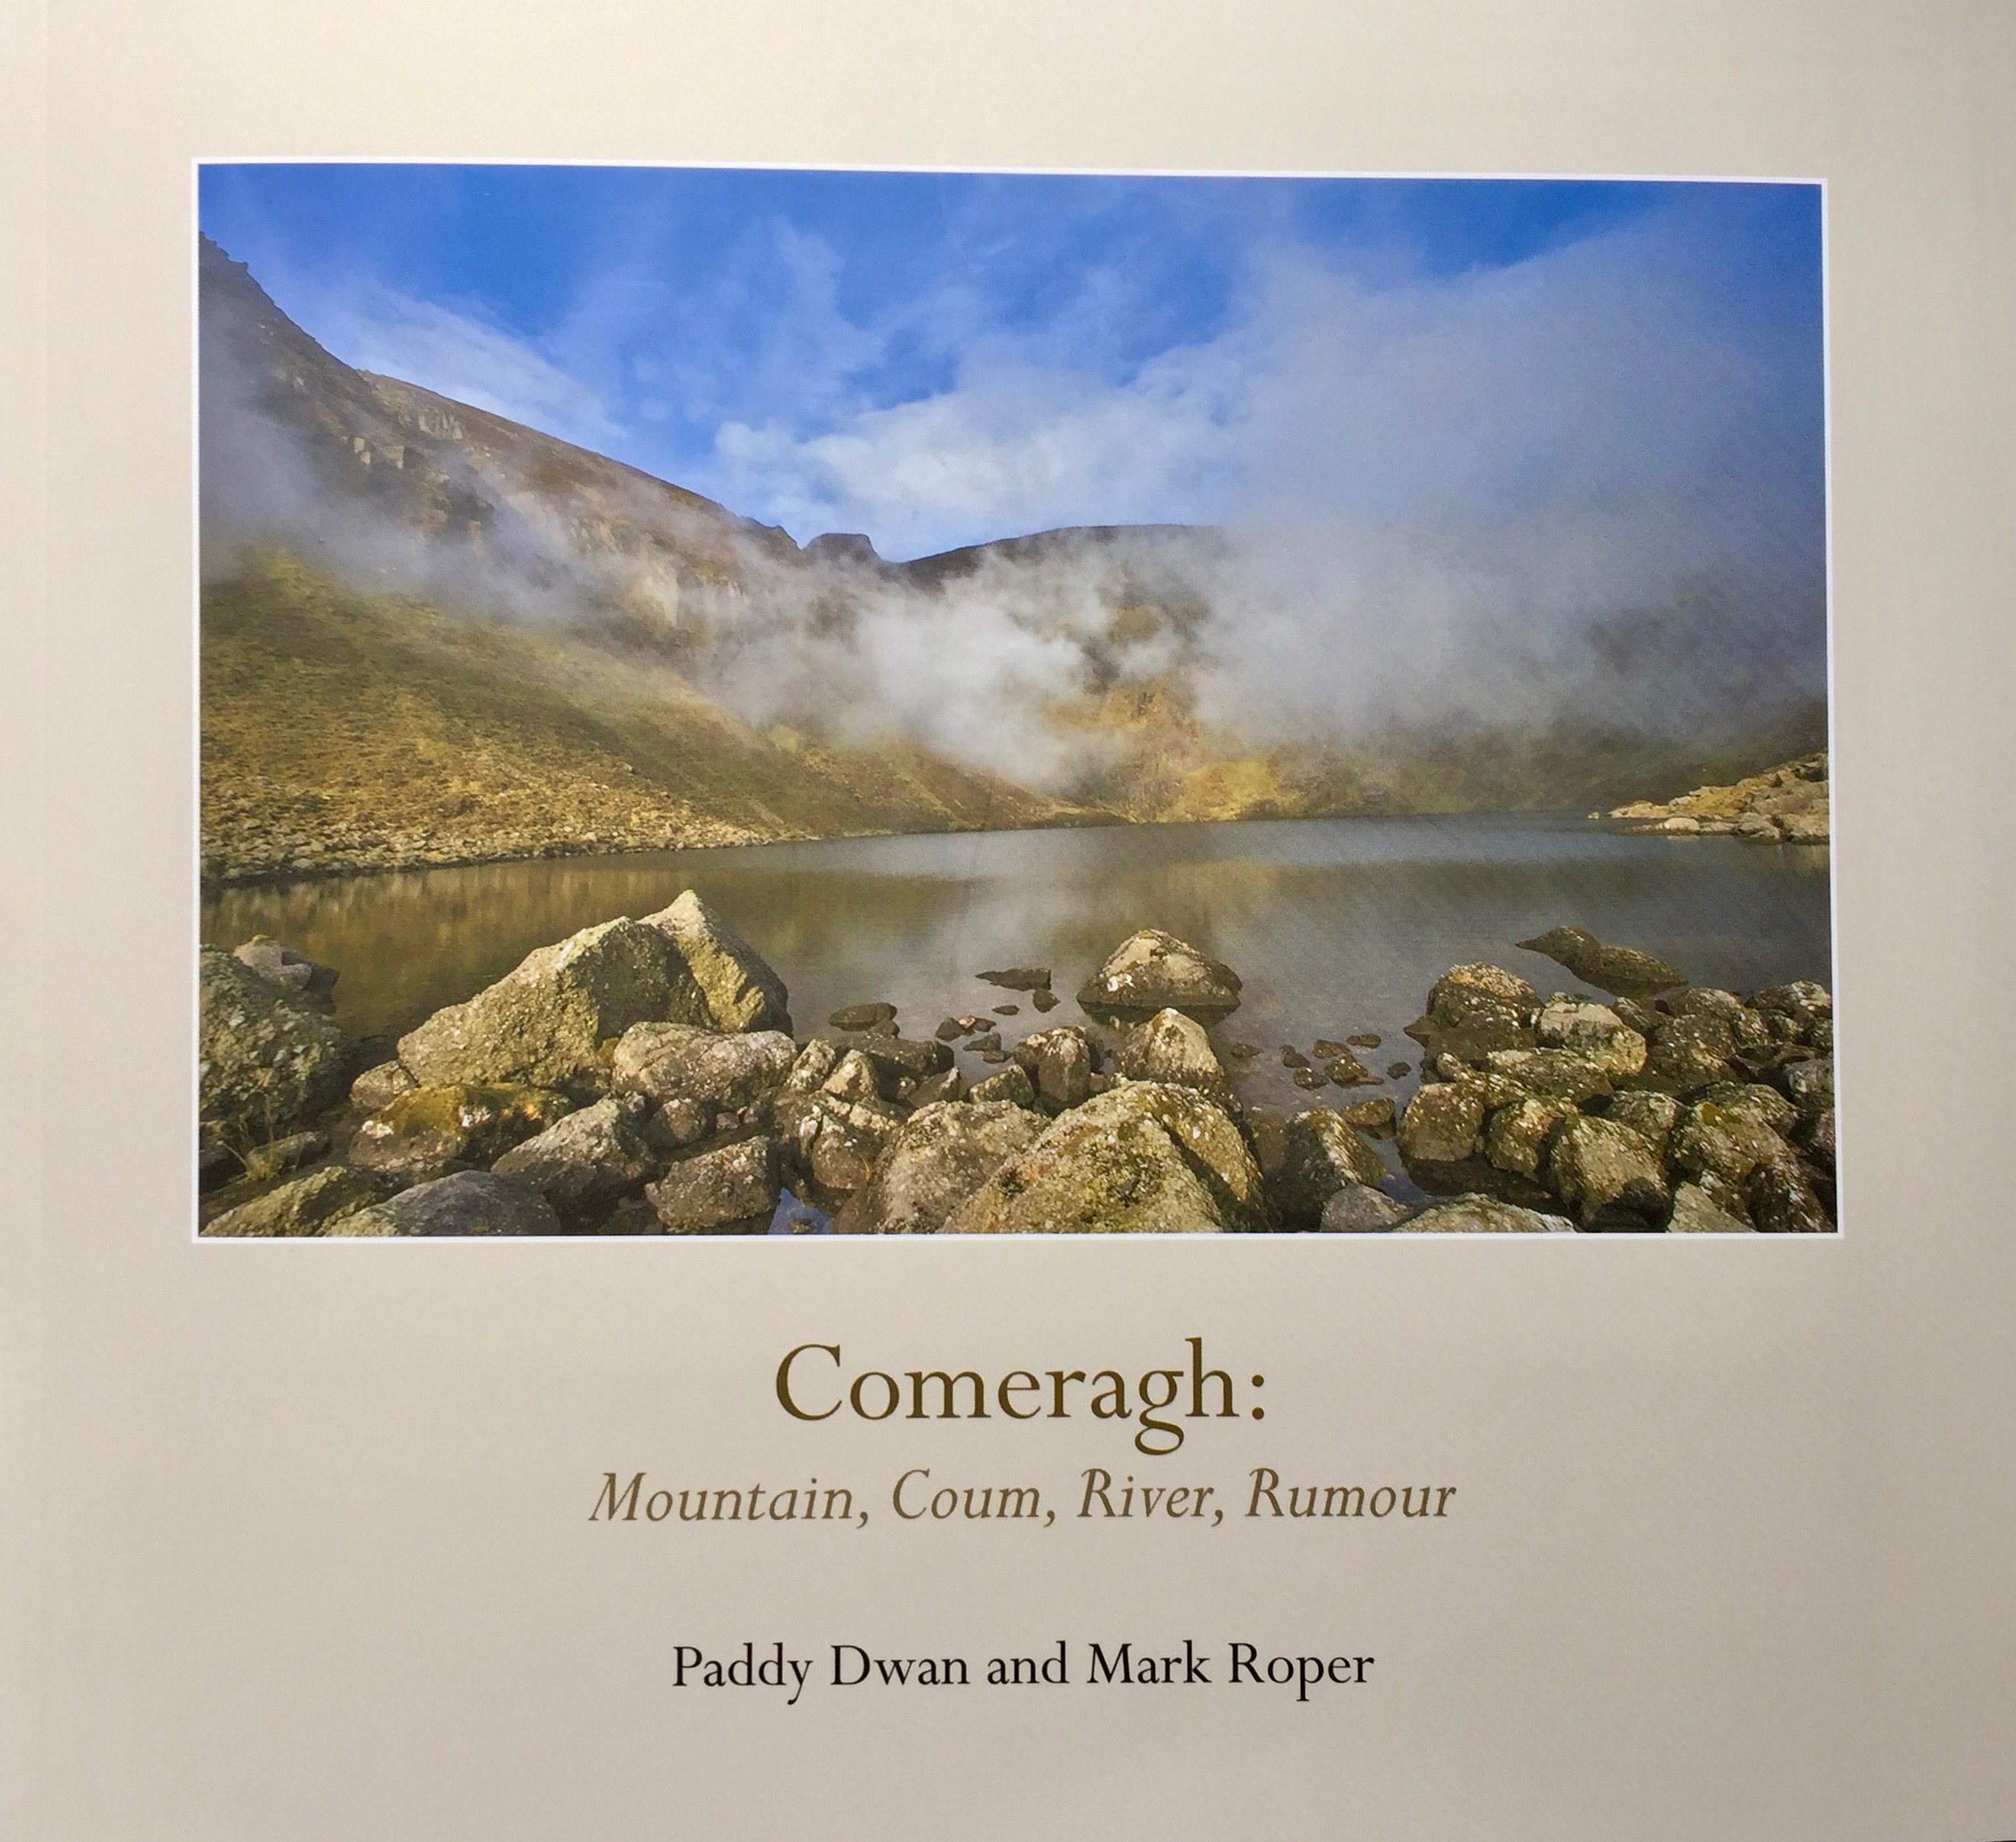 Comeragh: Mountain, Coum, River, Rumour